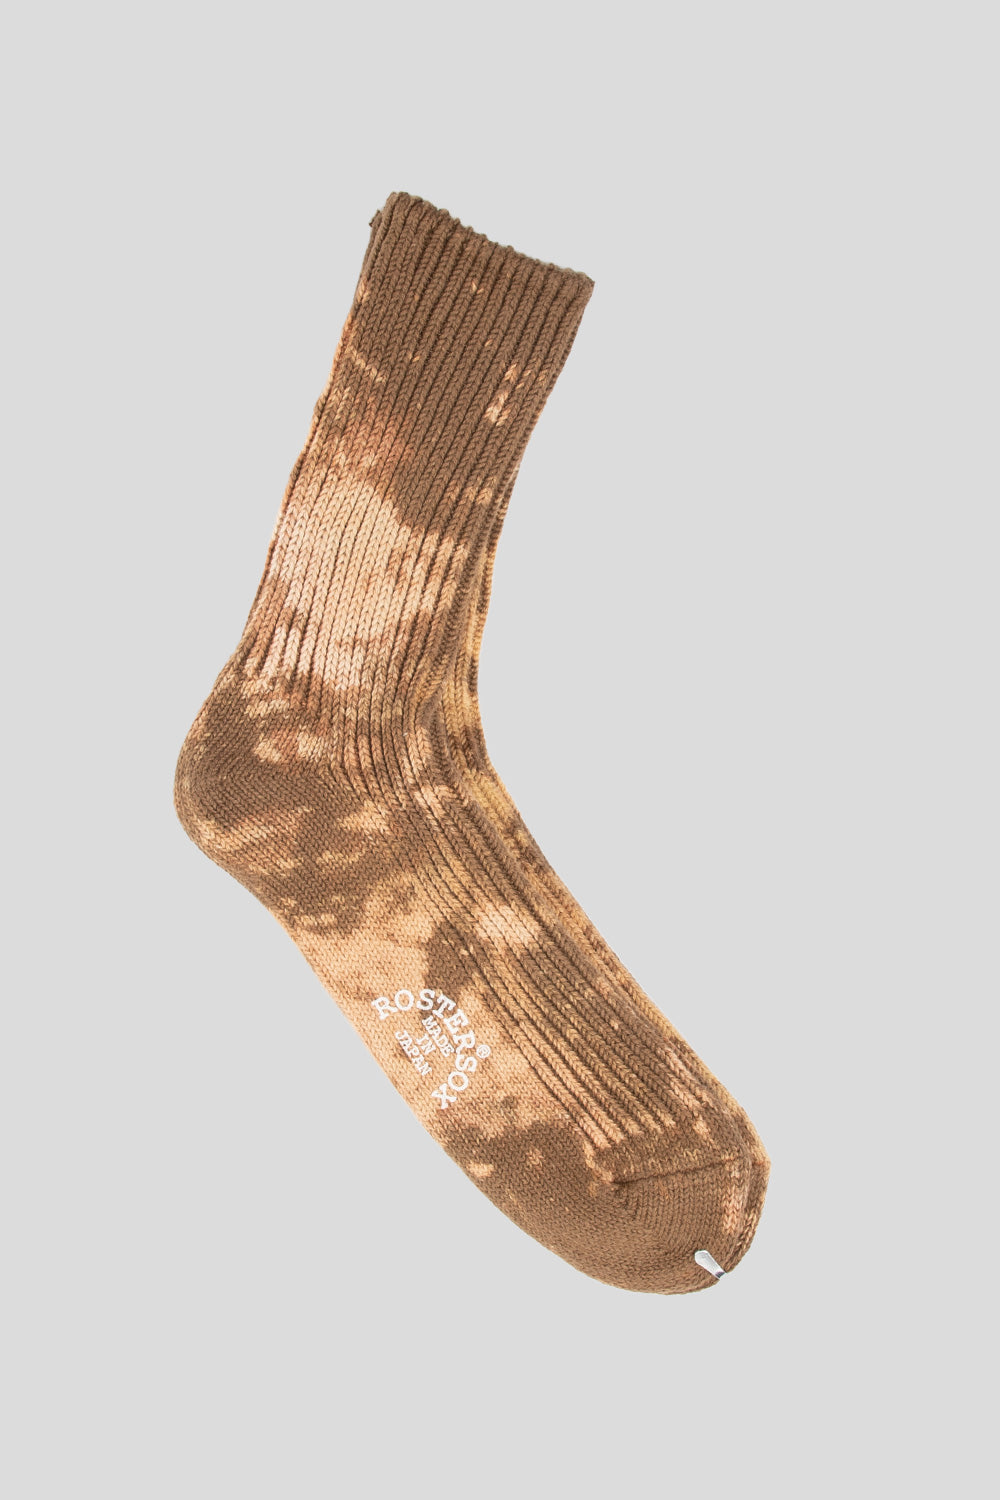 Rostersox BA Socks in Brown